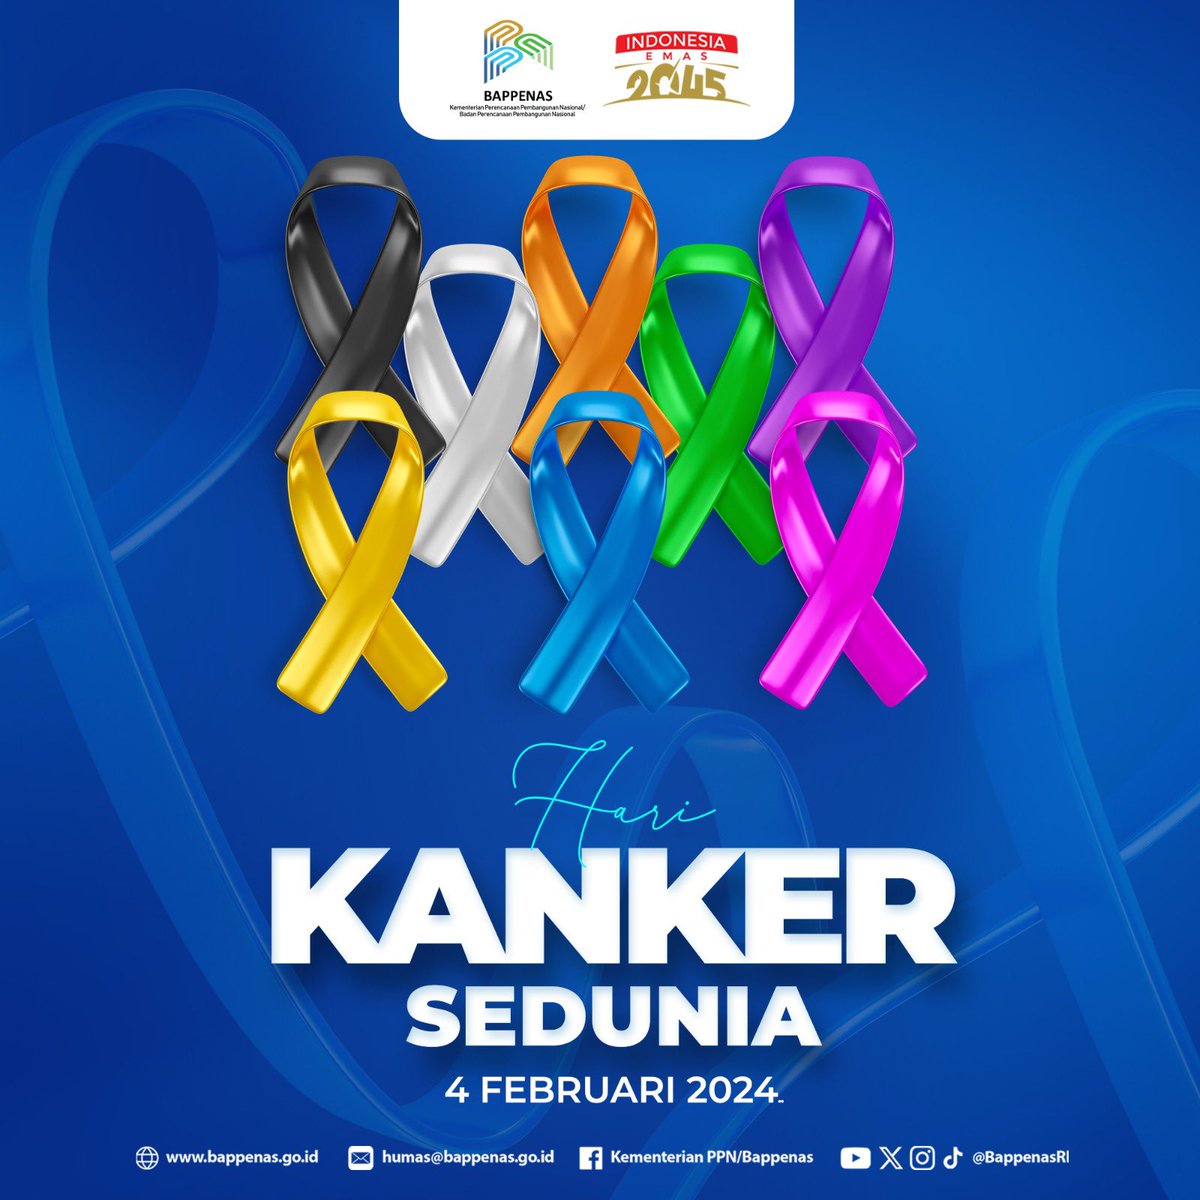 Selamat memperingati Hari Kanker Sedunia #SahabatPembangunan 

Mari lebih peka terhadap kesehatan diri dan orang tercinta di sekitarmu, terapkan pola hidup yang sehat untuk jiwa raga yang kuat 💪🏻 

#Bappenas #MembangunIndonesia #HariKanker2024 #HariKankerSedunia